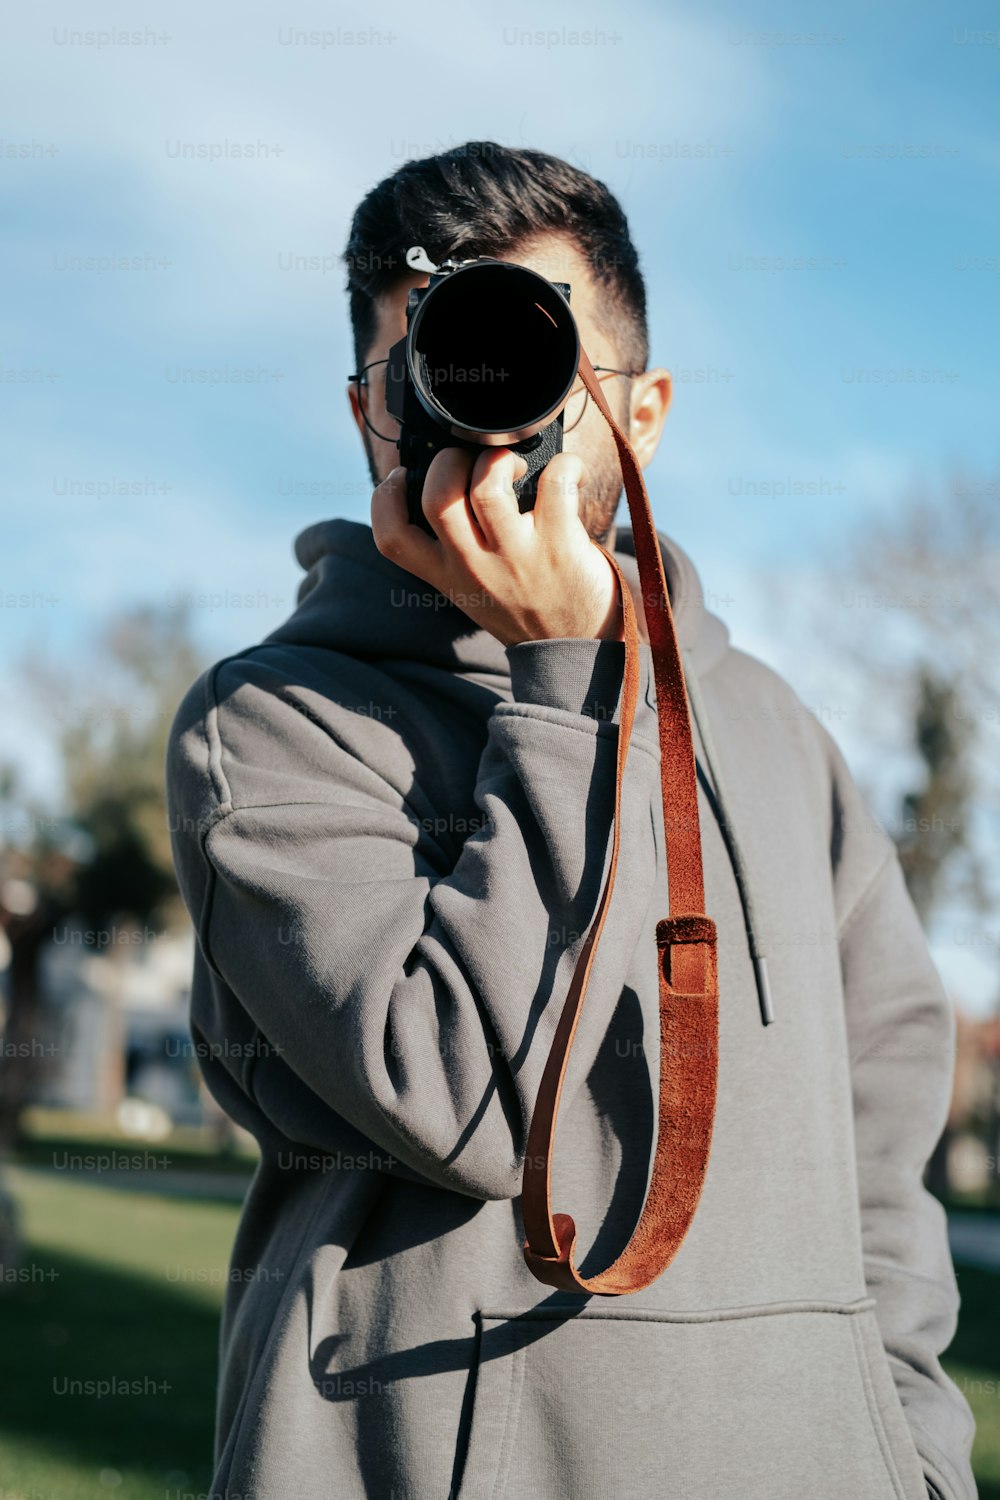 Un homme prenant une photo avec un appareil photo